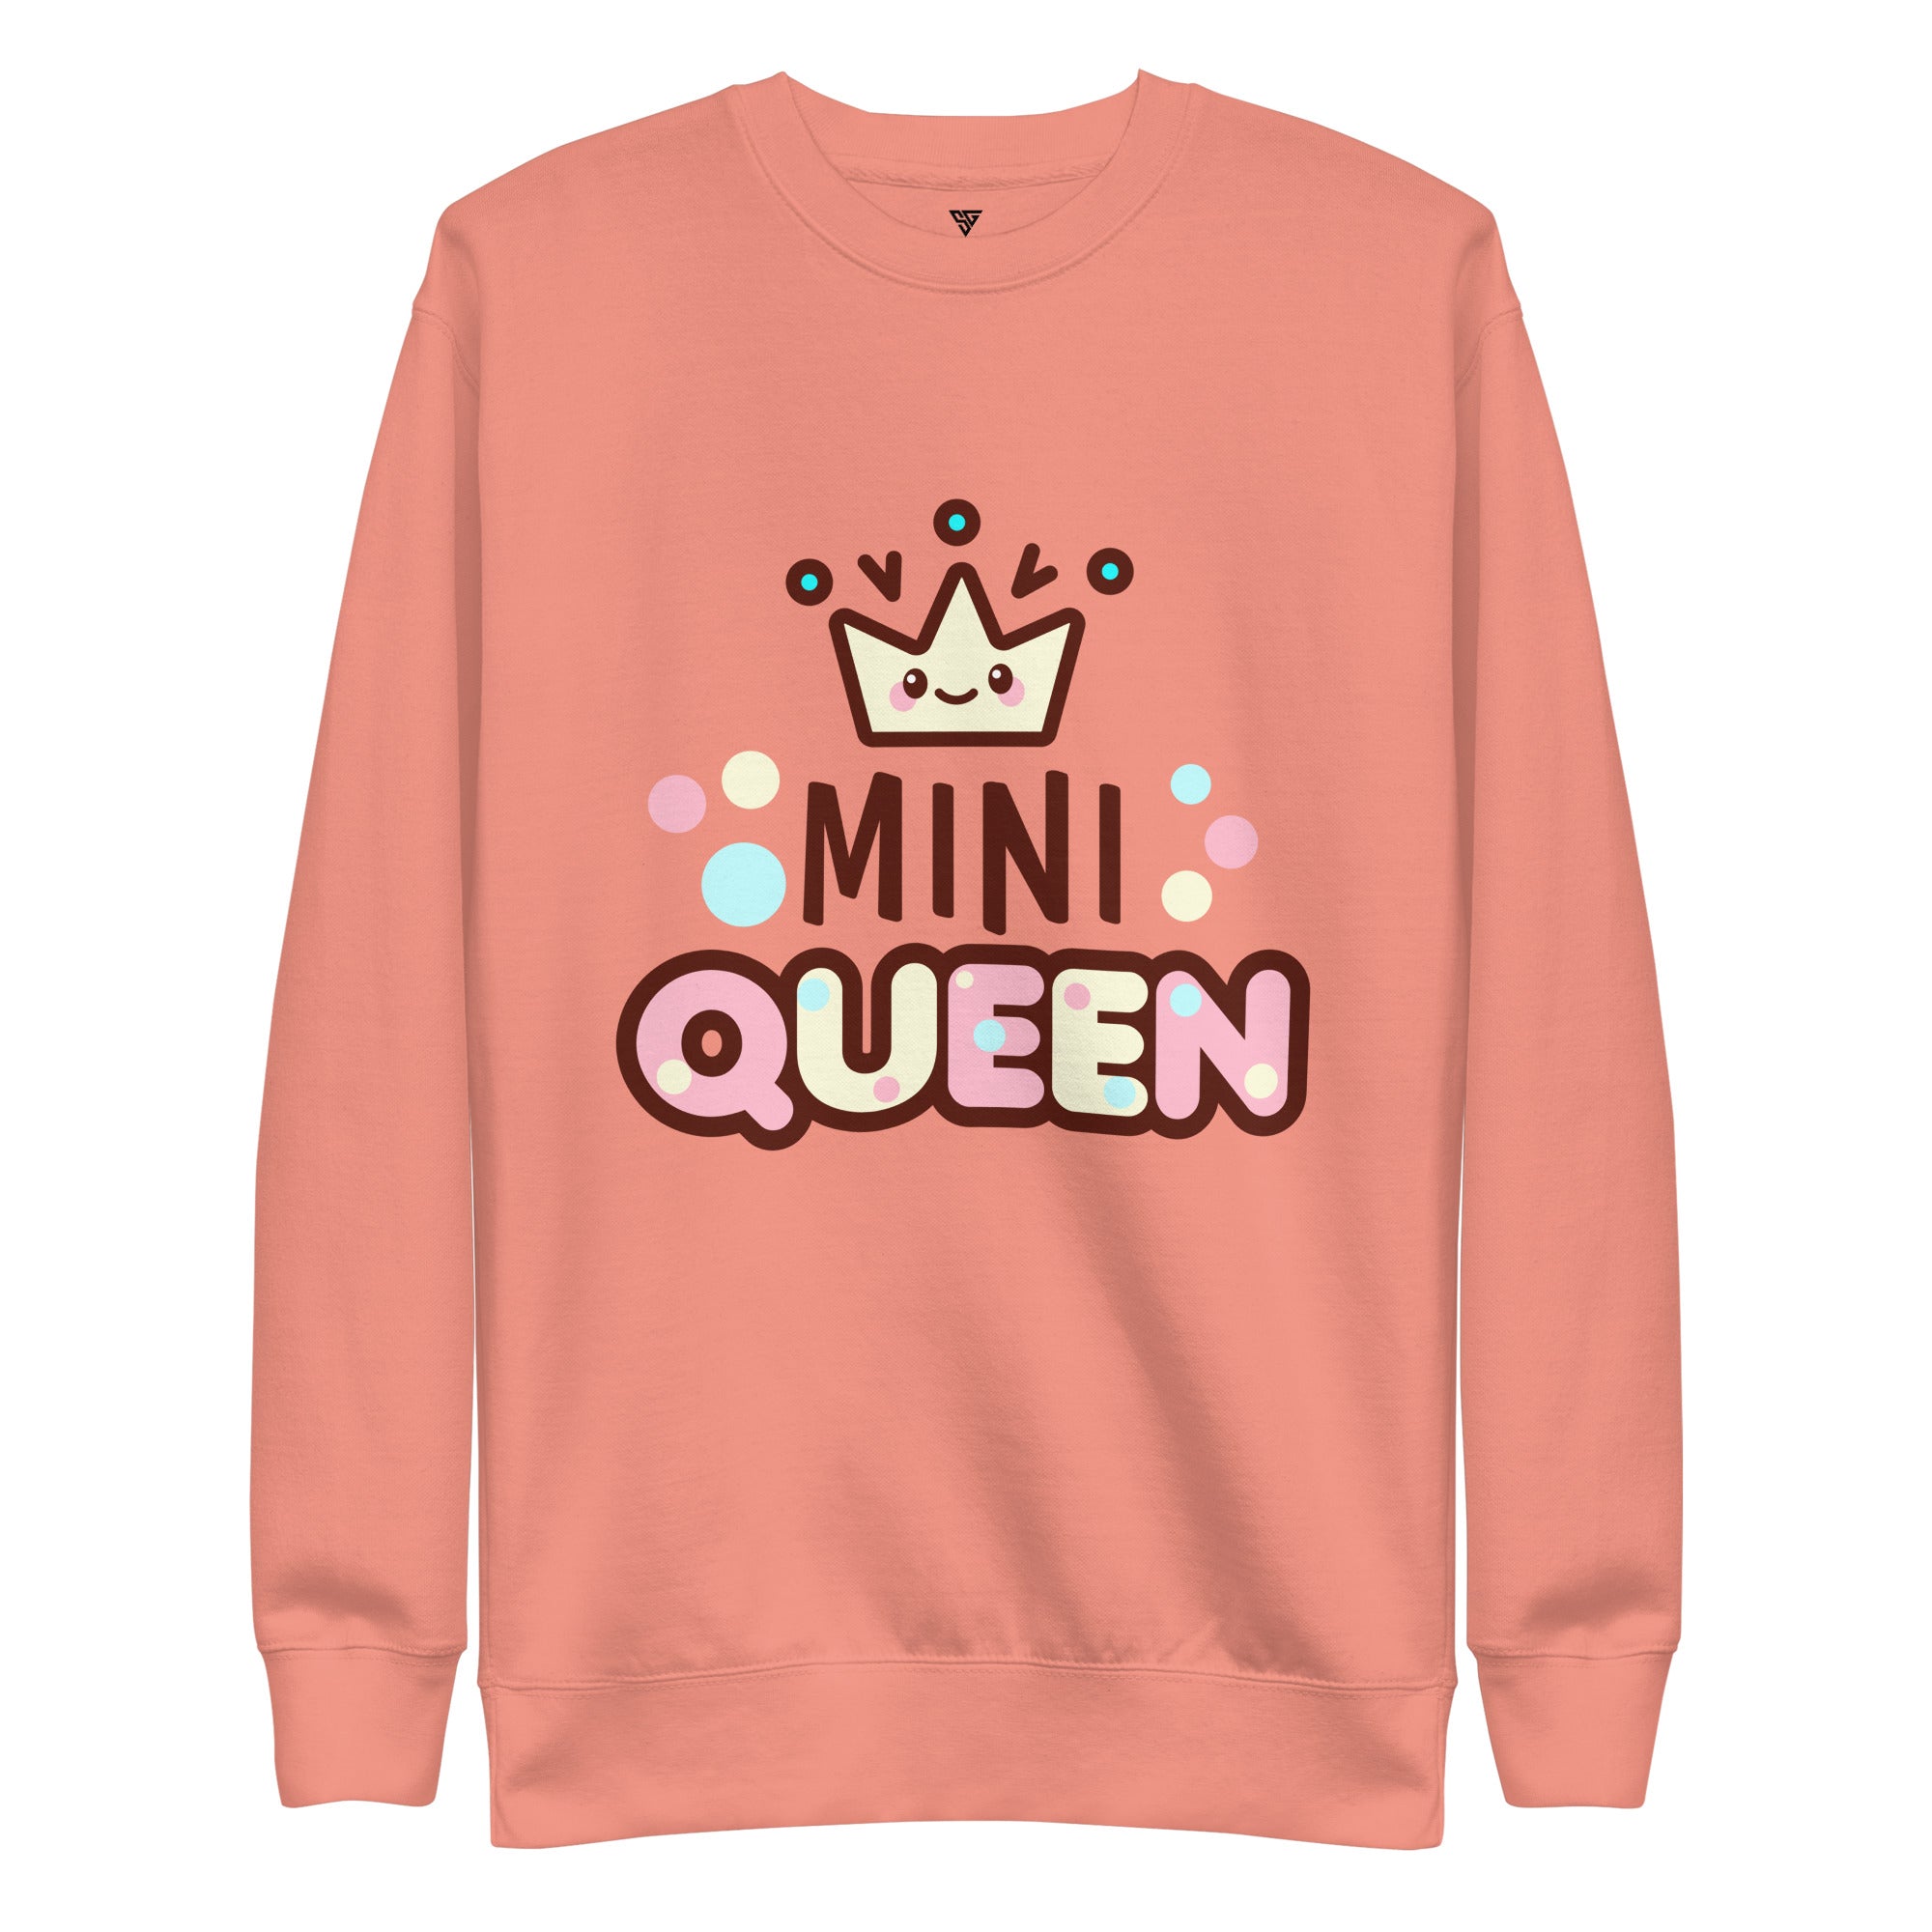 SORTYGO - Queen Women Premium Sweatshirt in Dusty Rose